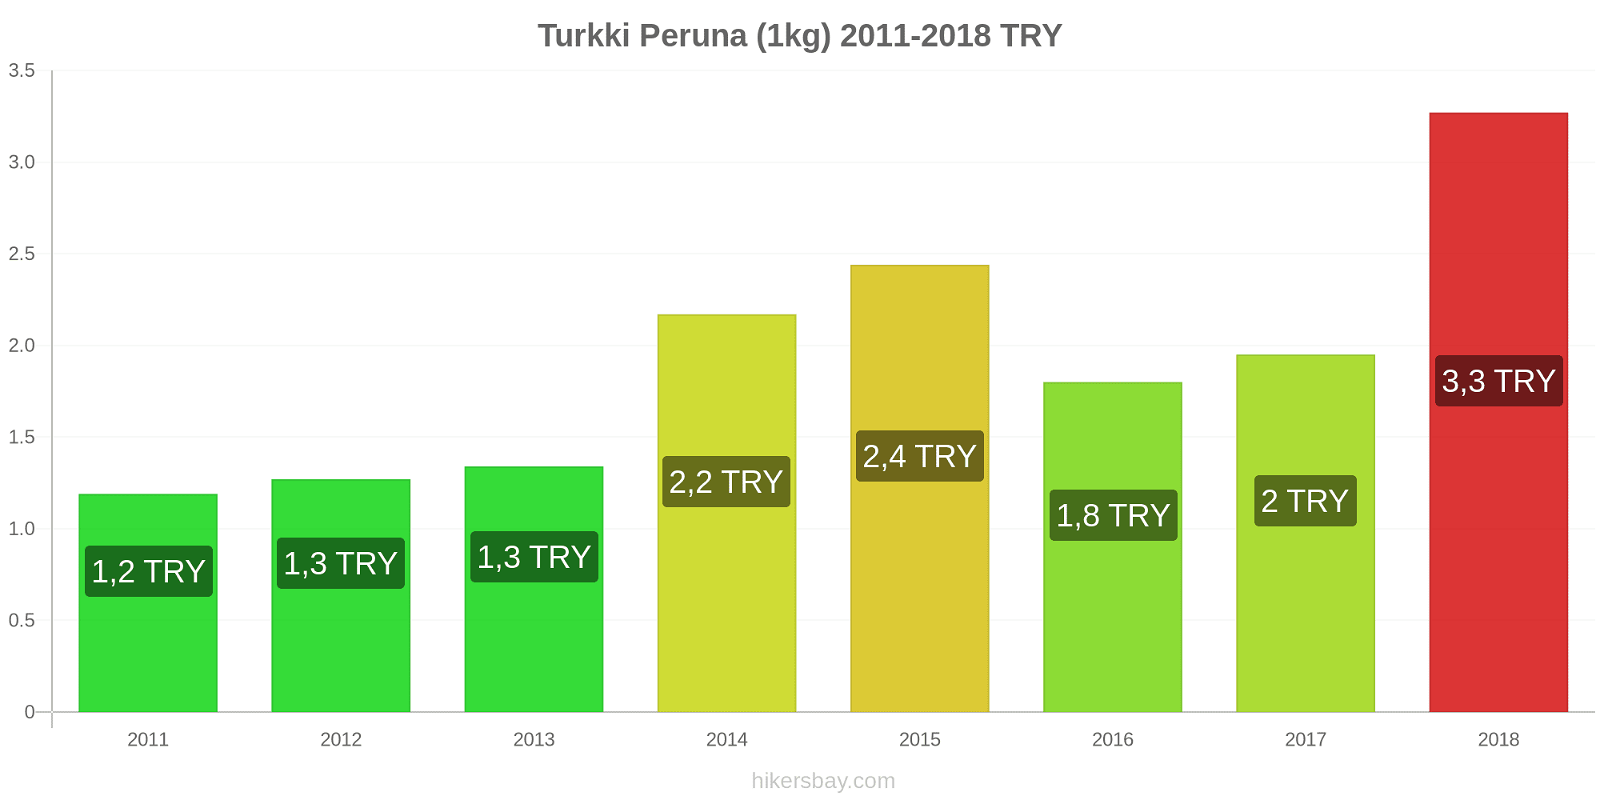 Turkki hintojen muutokset Peruna (1kg) hikersbay.com